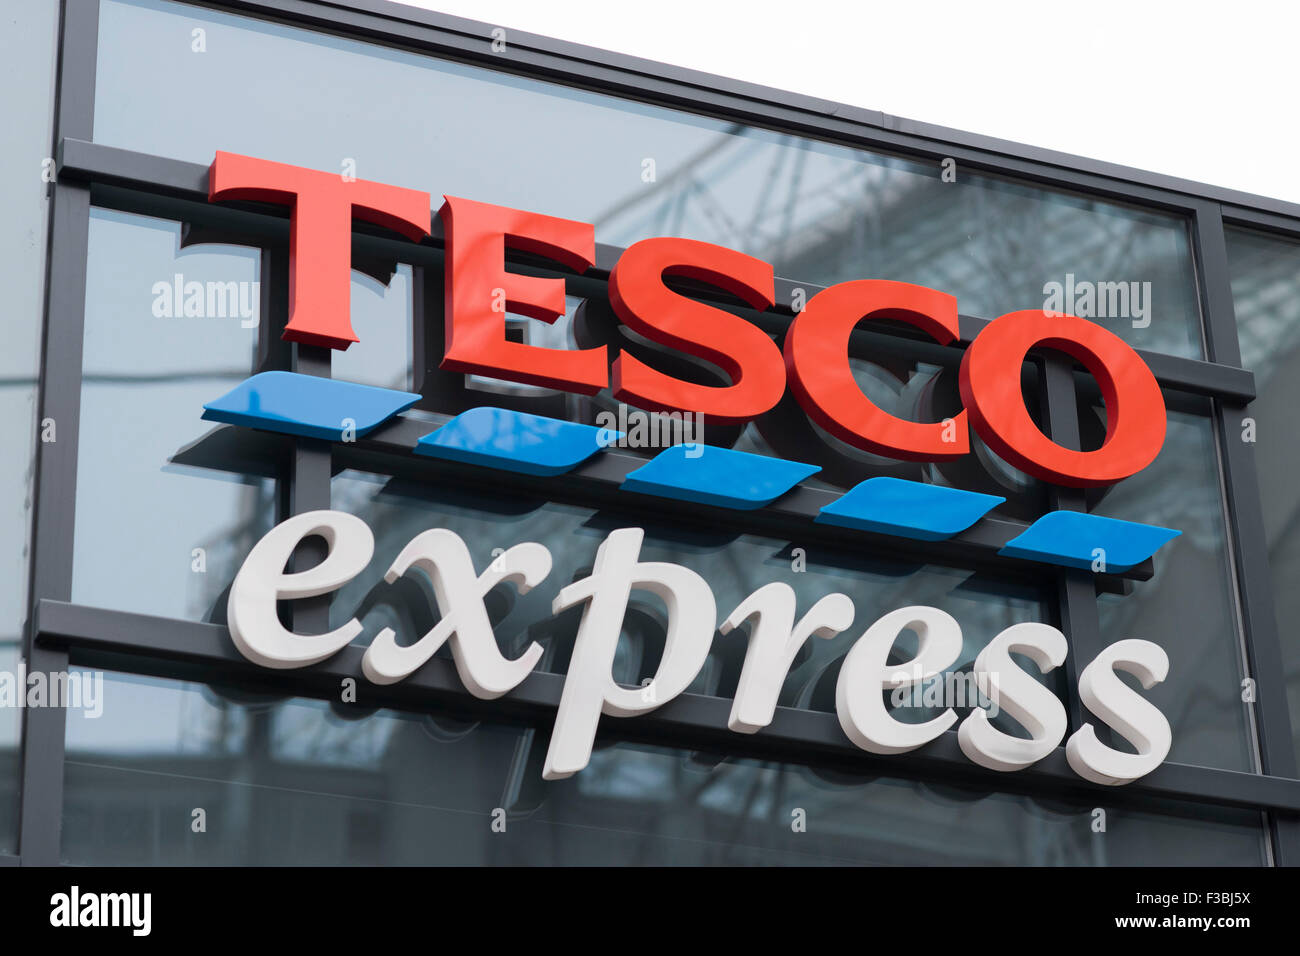 A Tesco Express shop sign logo. Stock Photo